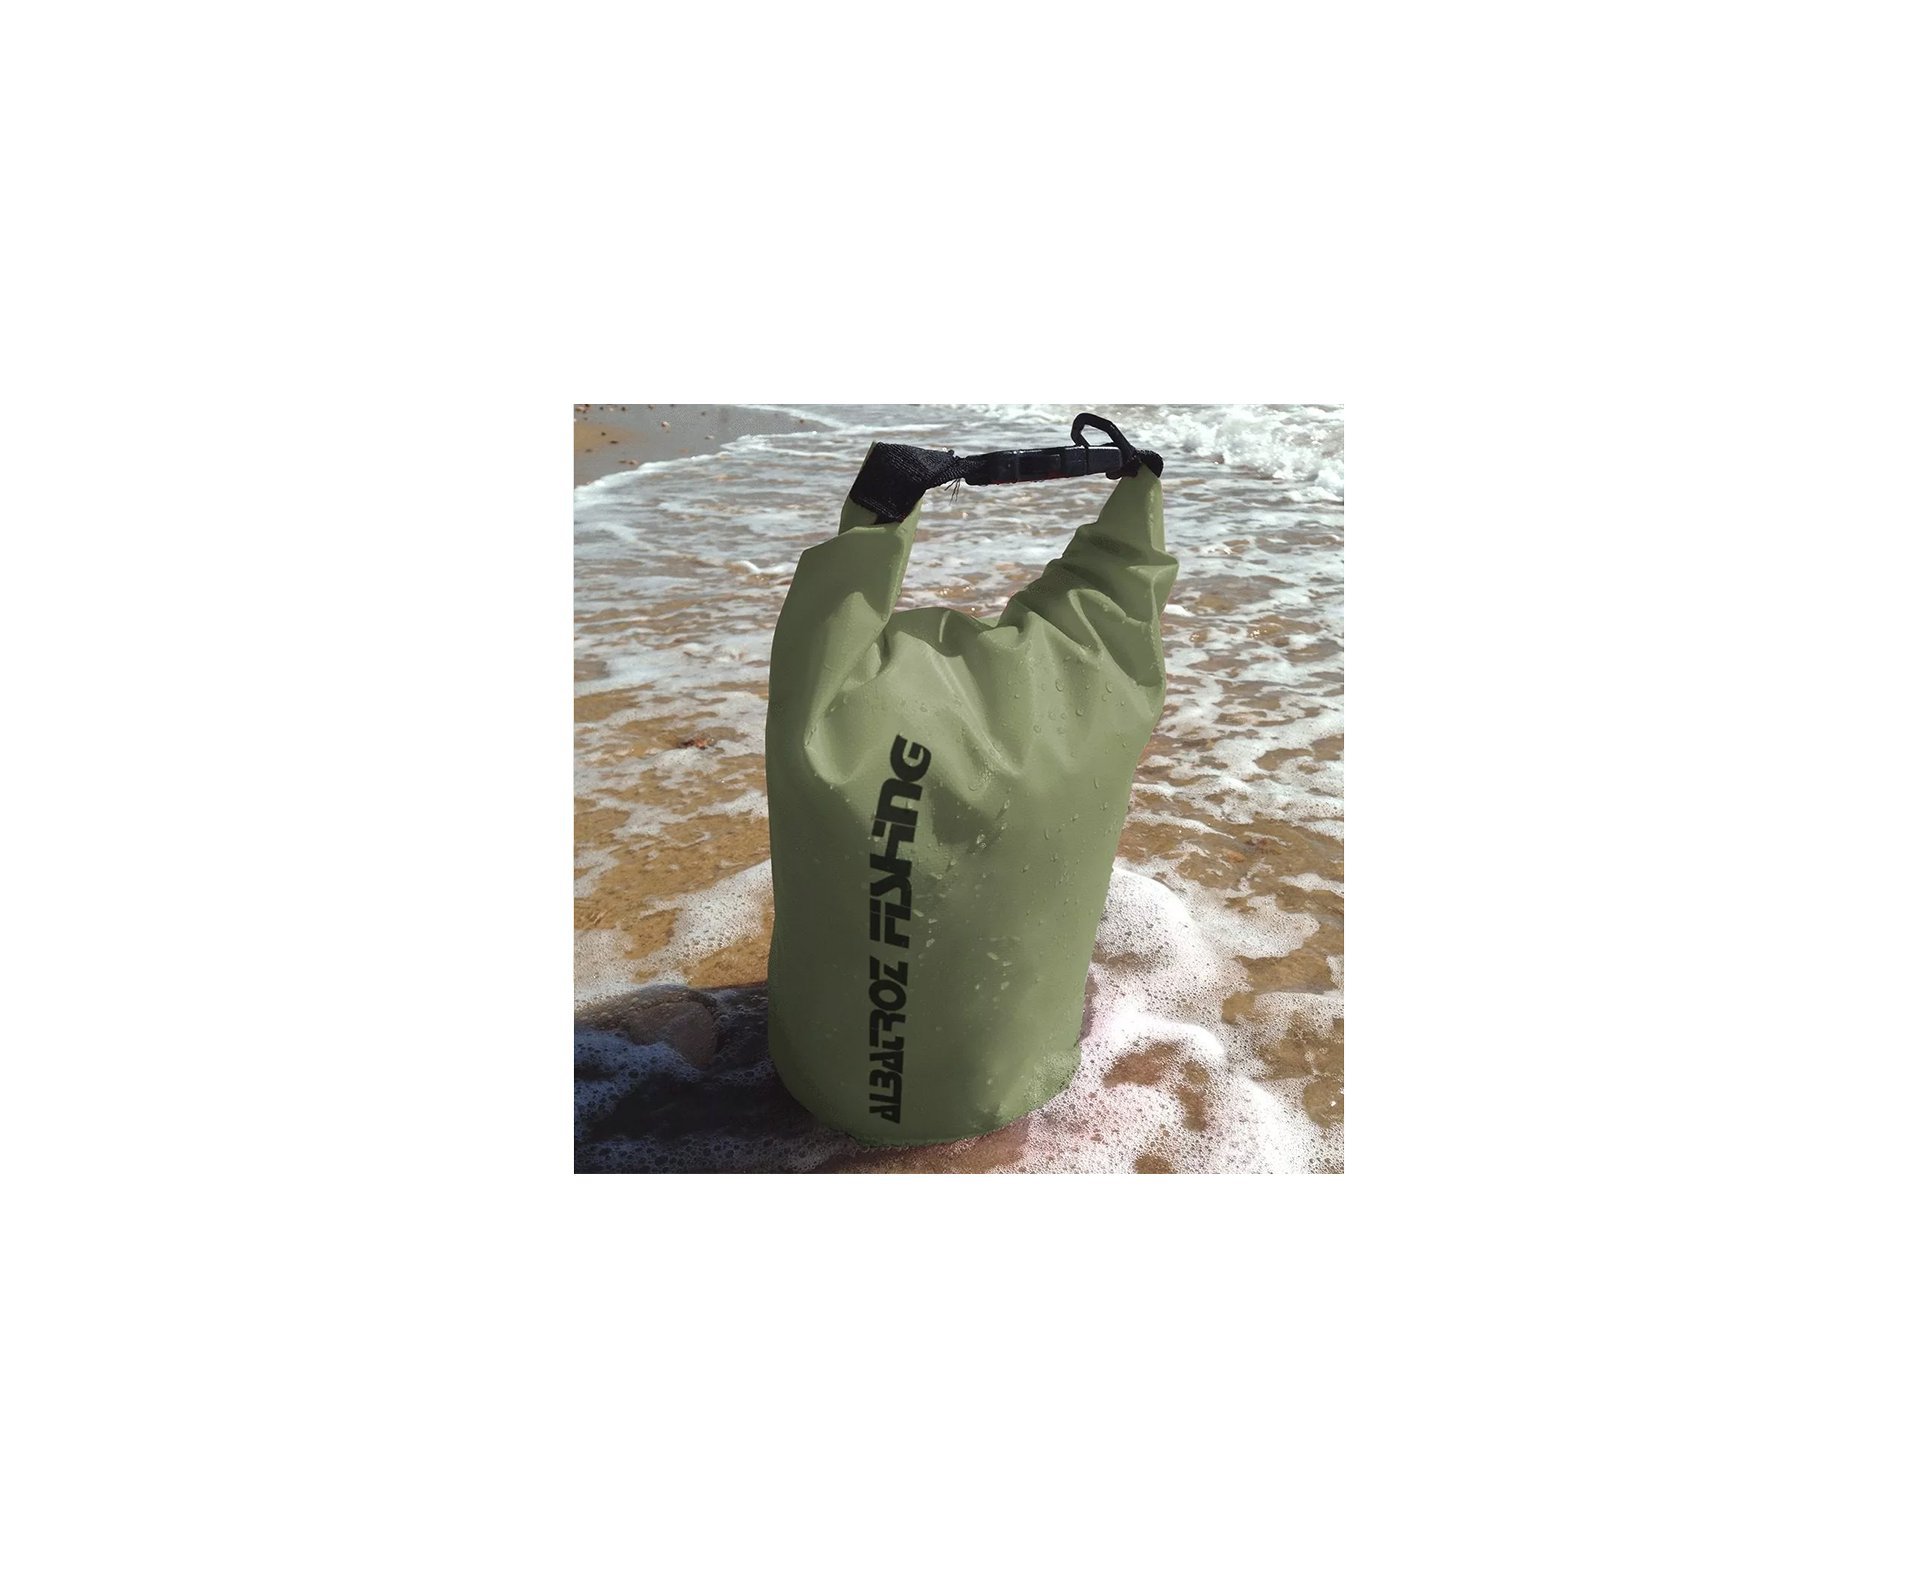 Bolsa Bag A Prova D Agua 50l Verde Militar - Albatroz